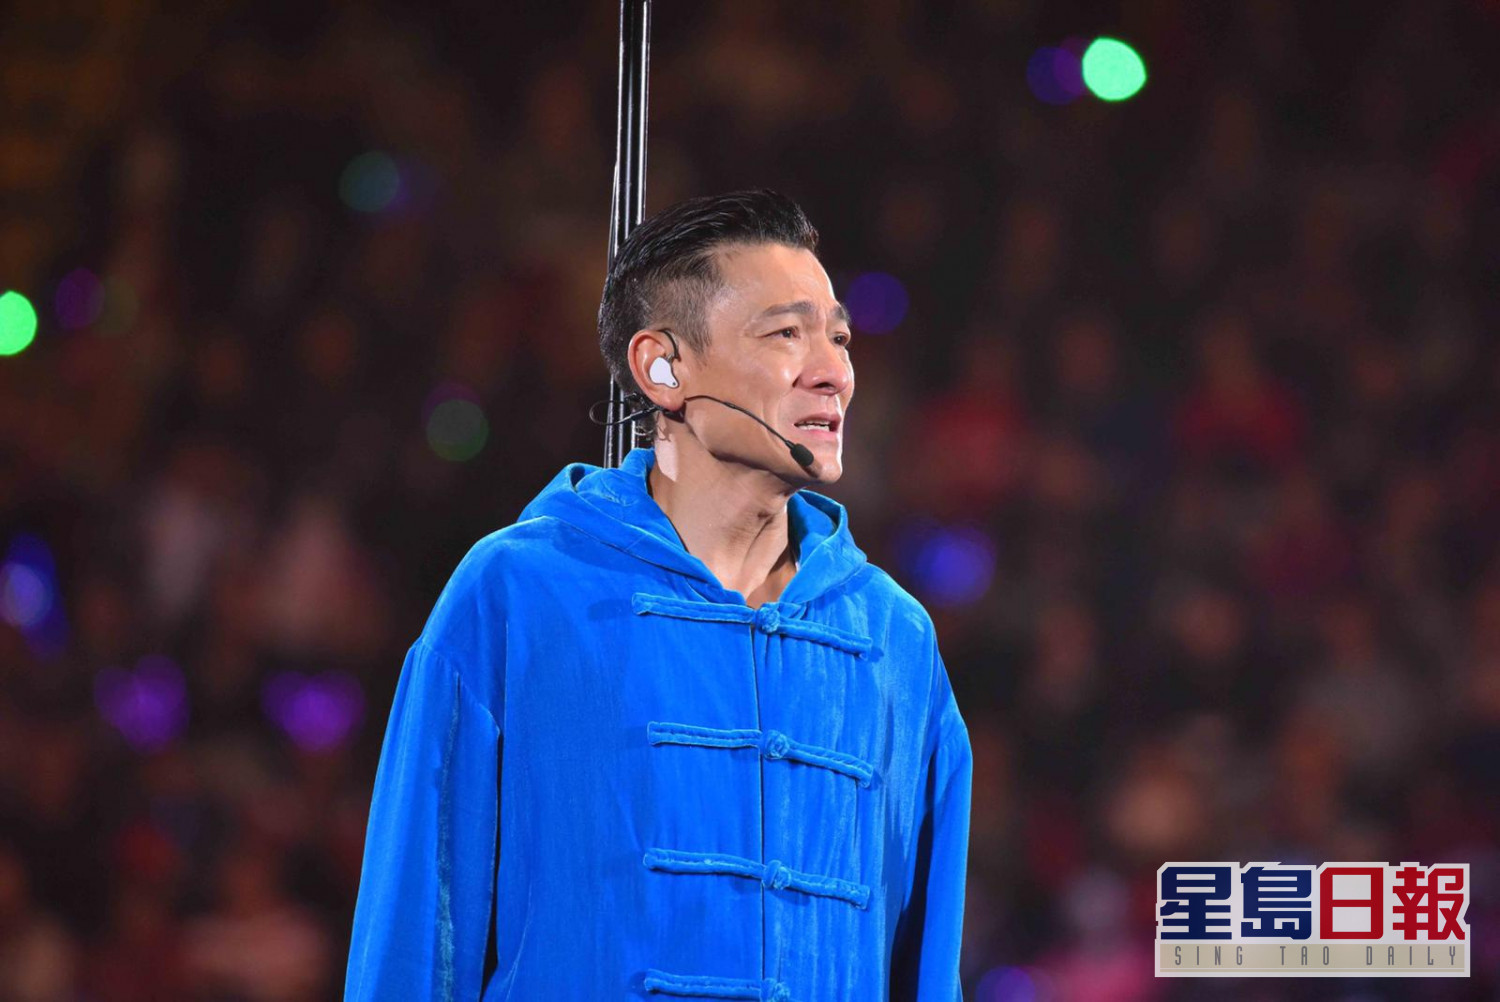 北京上海廣州 半封城 劉德華再宣佈3地巡唱延期 星島日報